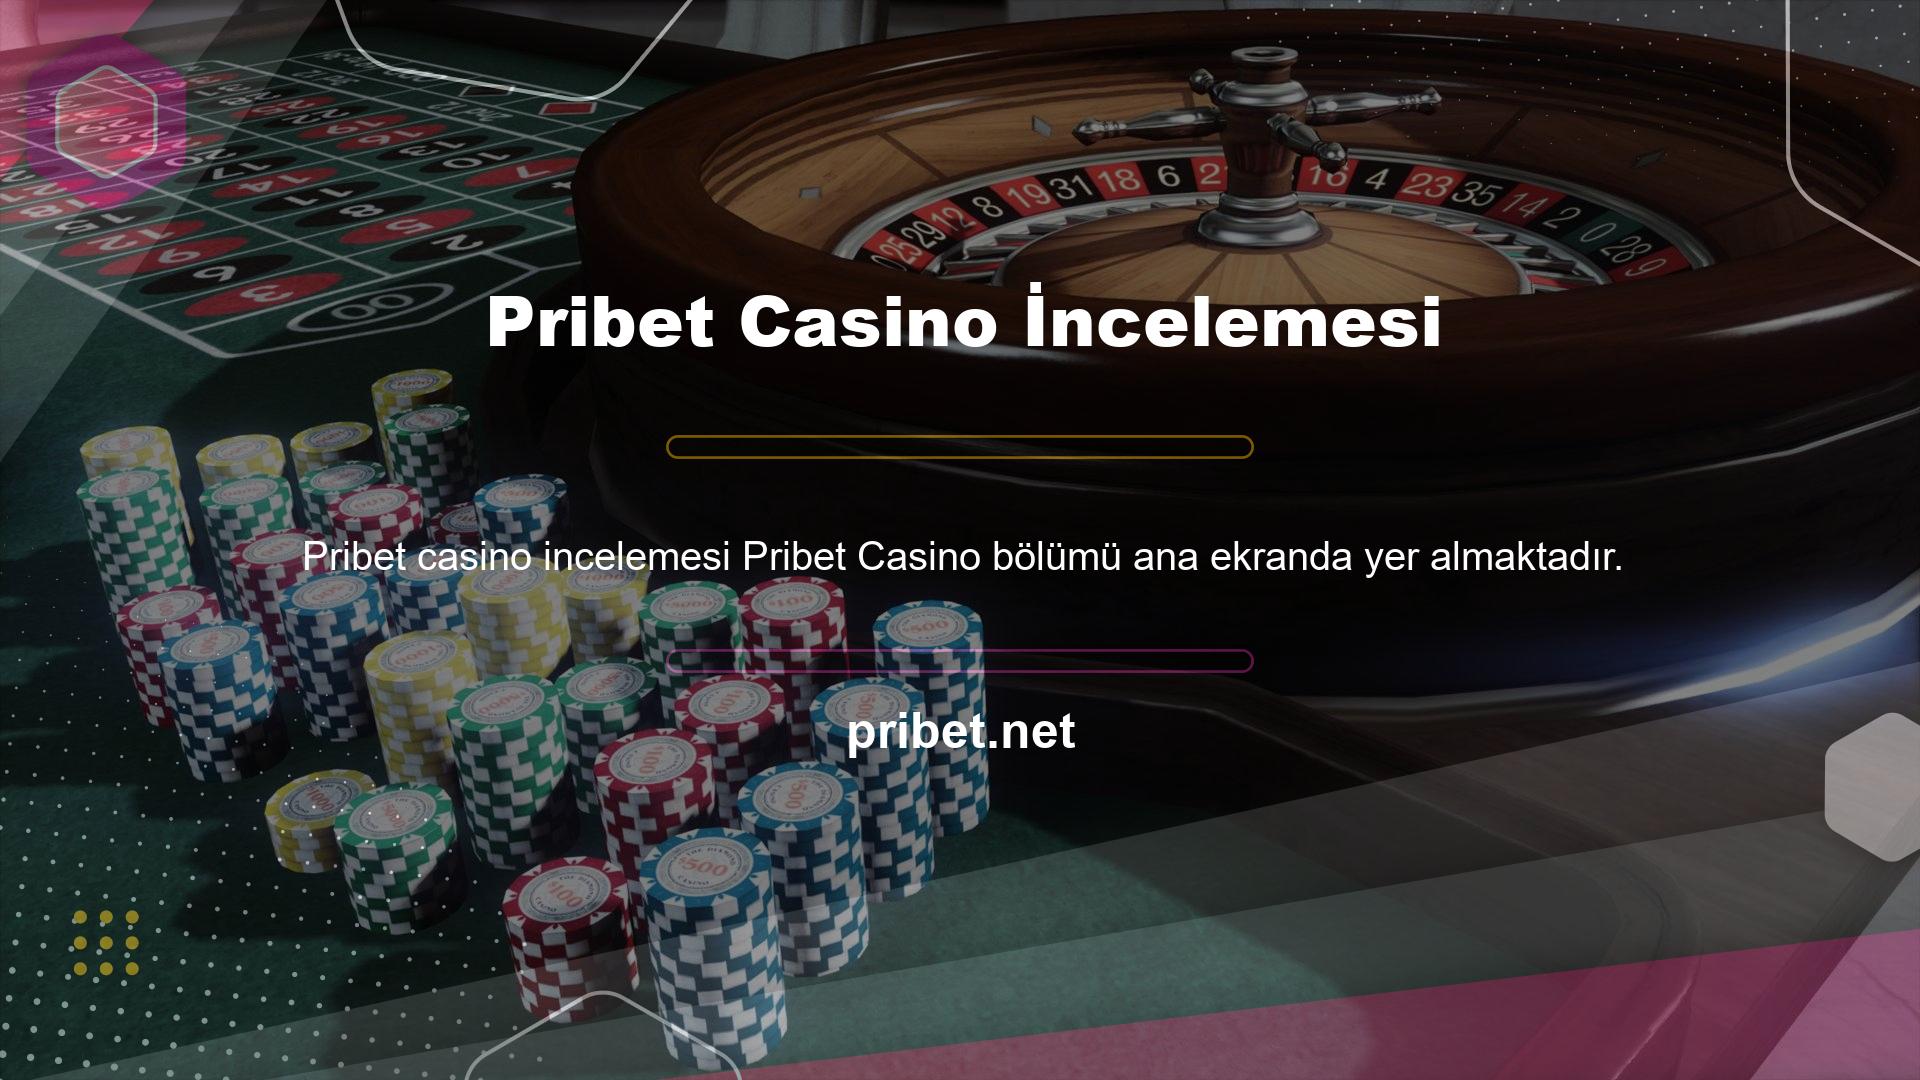 Bu tema, rastgele sonuçlar üreten çevrimiçi casino oyunları sunmak için tasarlanmıştır